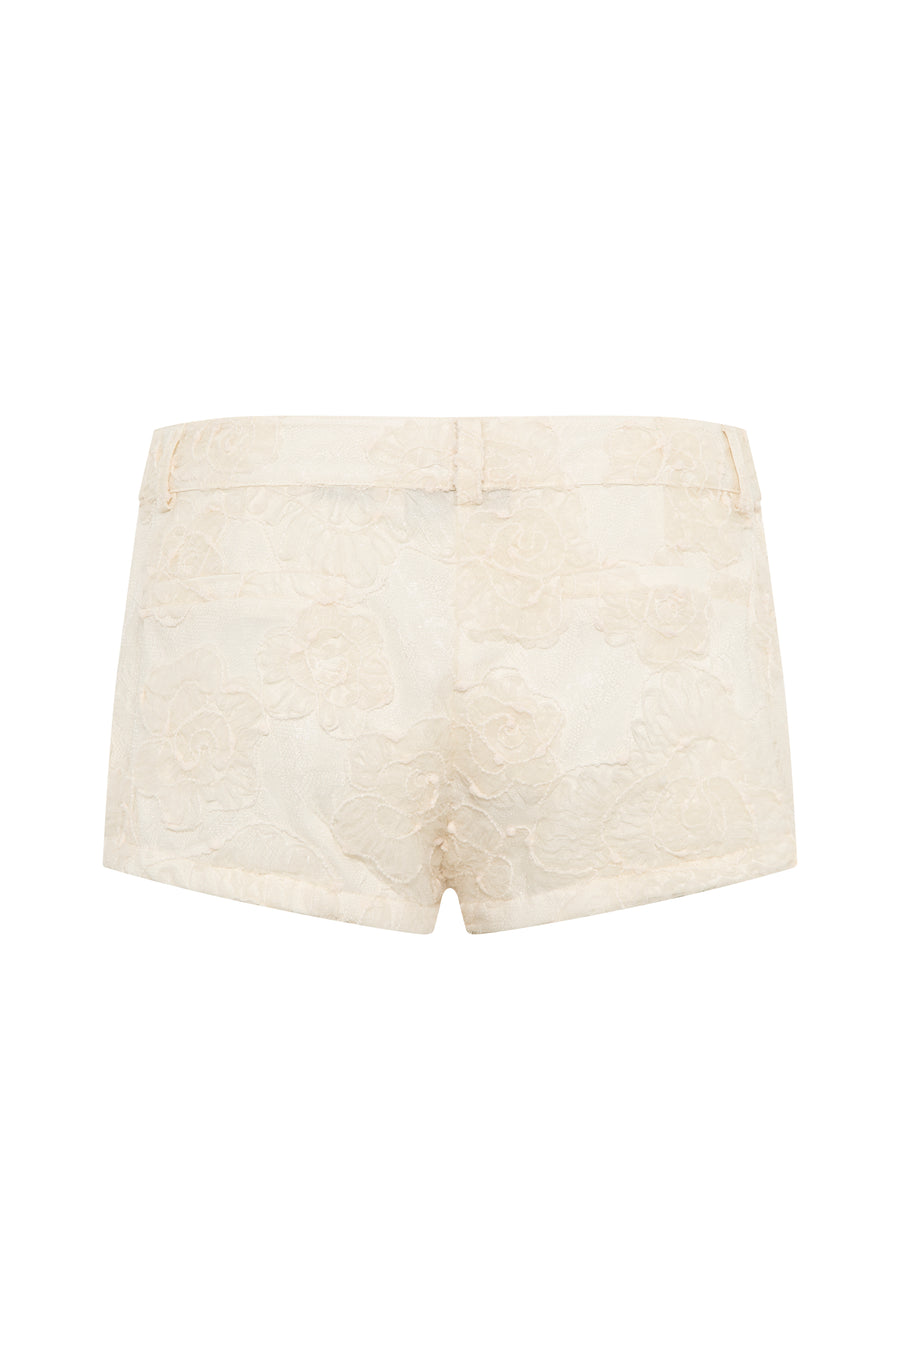 HOLI - Floral tulle overlayed mini shorts